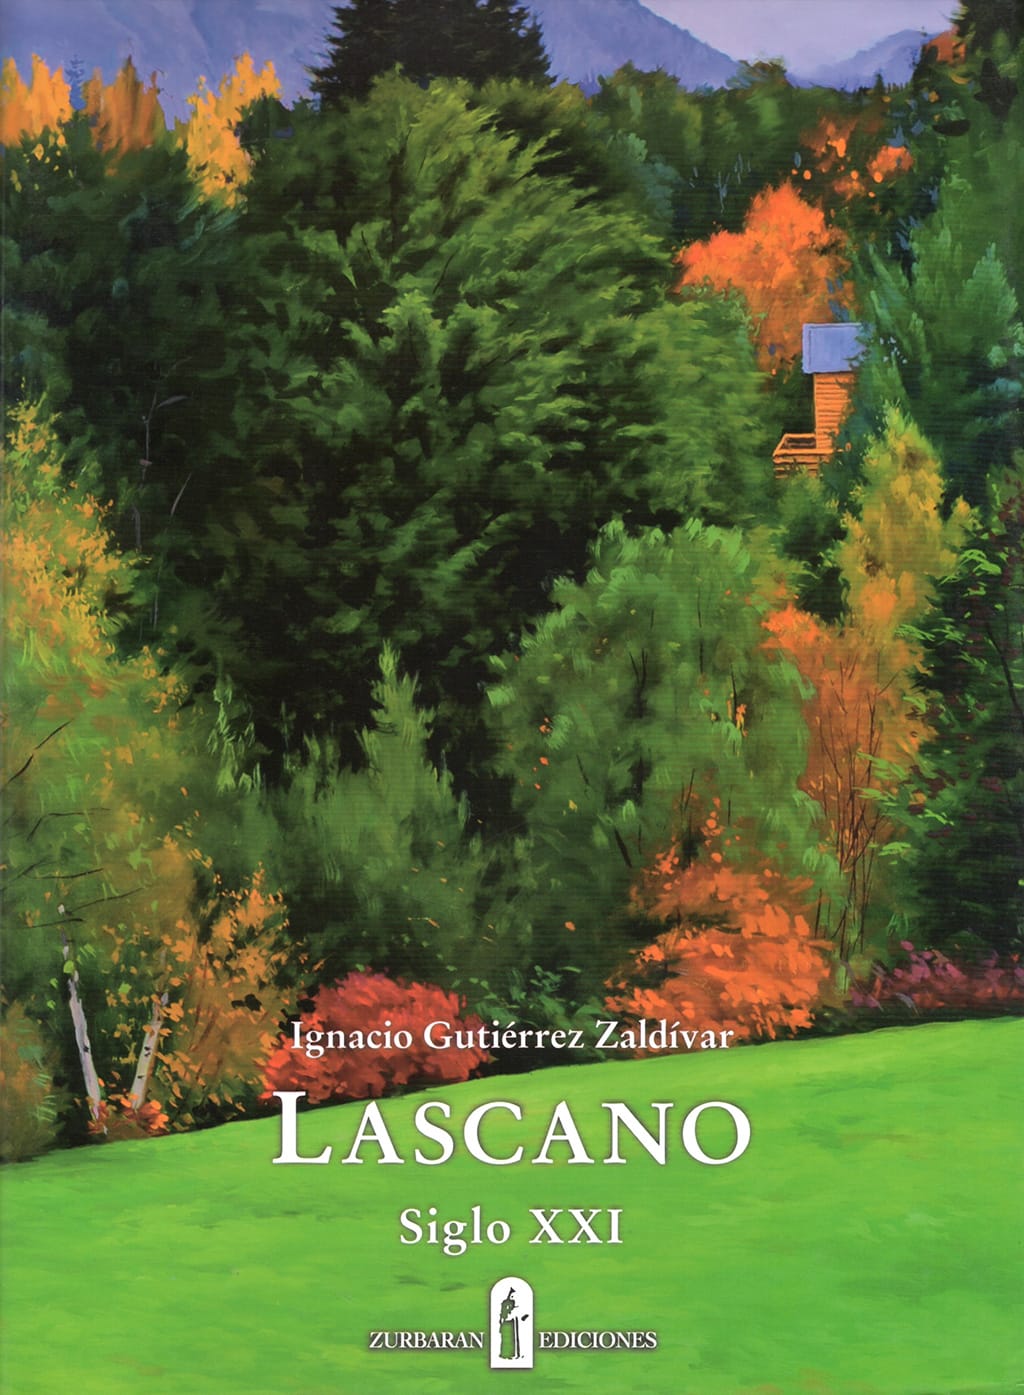 2013-Tapa-libro-Lascano-s-XXI.jpg